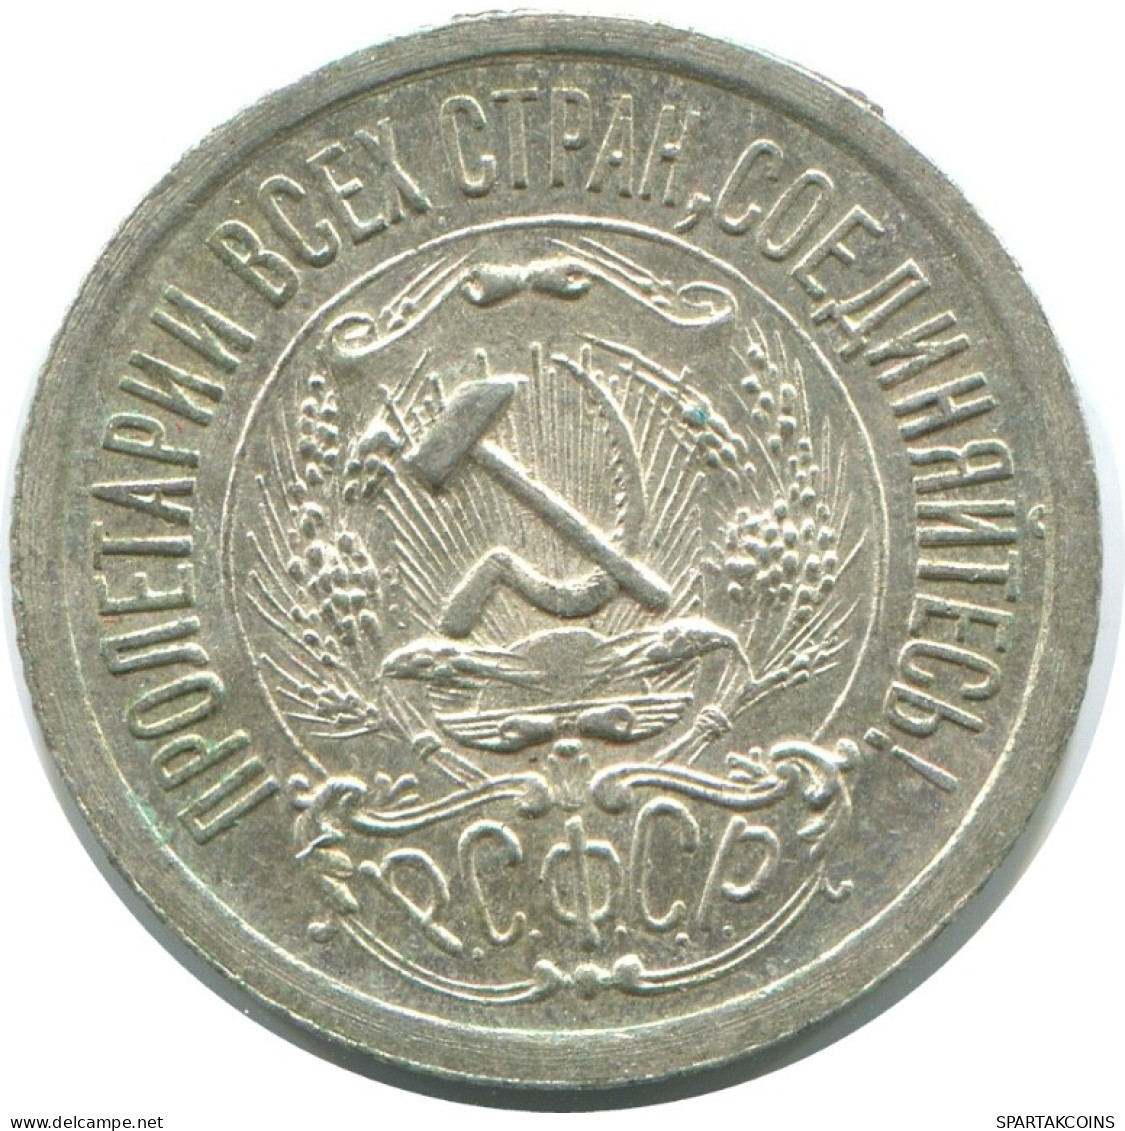 15 KOPEKS 1923 RUSIA RUSSIA RSFSR PLATA Moneda HIGH GRADE #AF057.4.E.A - Russland